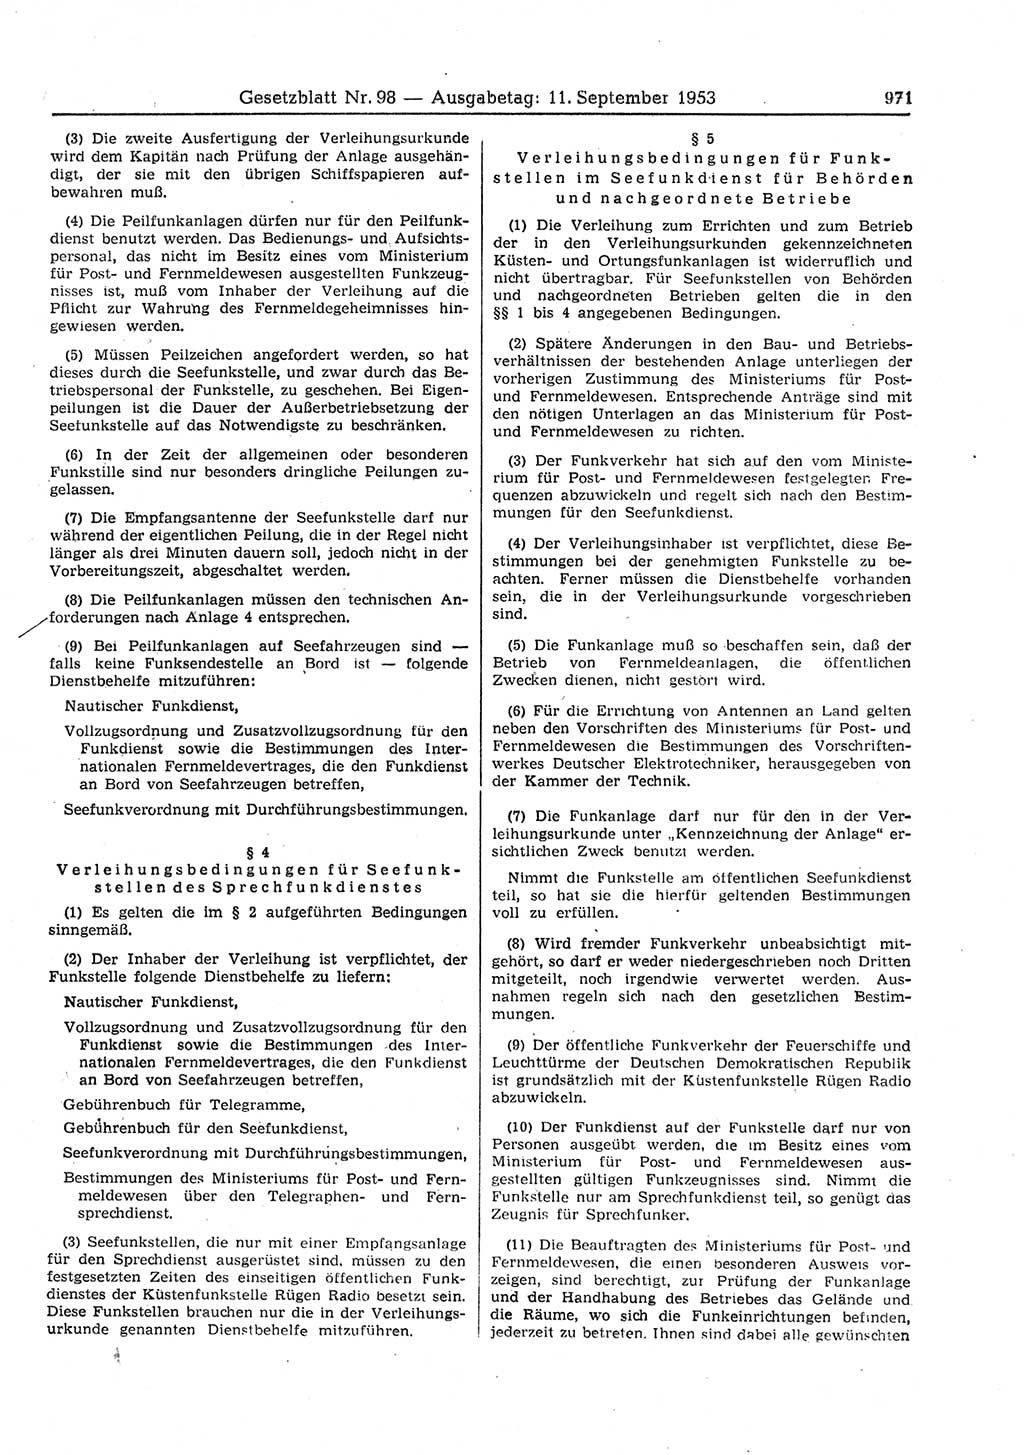 Gesetzblatt (GBl.) der Deutschen Demokratischen Republik (DDR) 1953, Seite 971 (GBl. DDR 1953, S. 971)